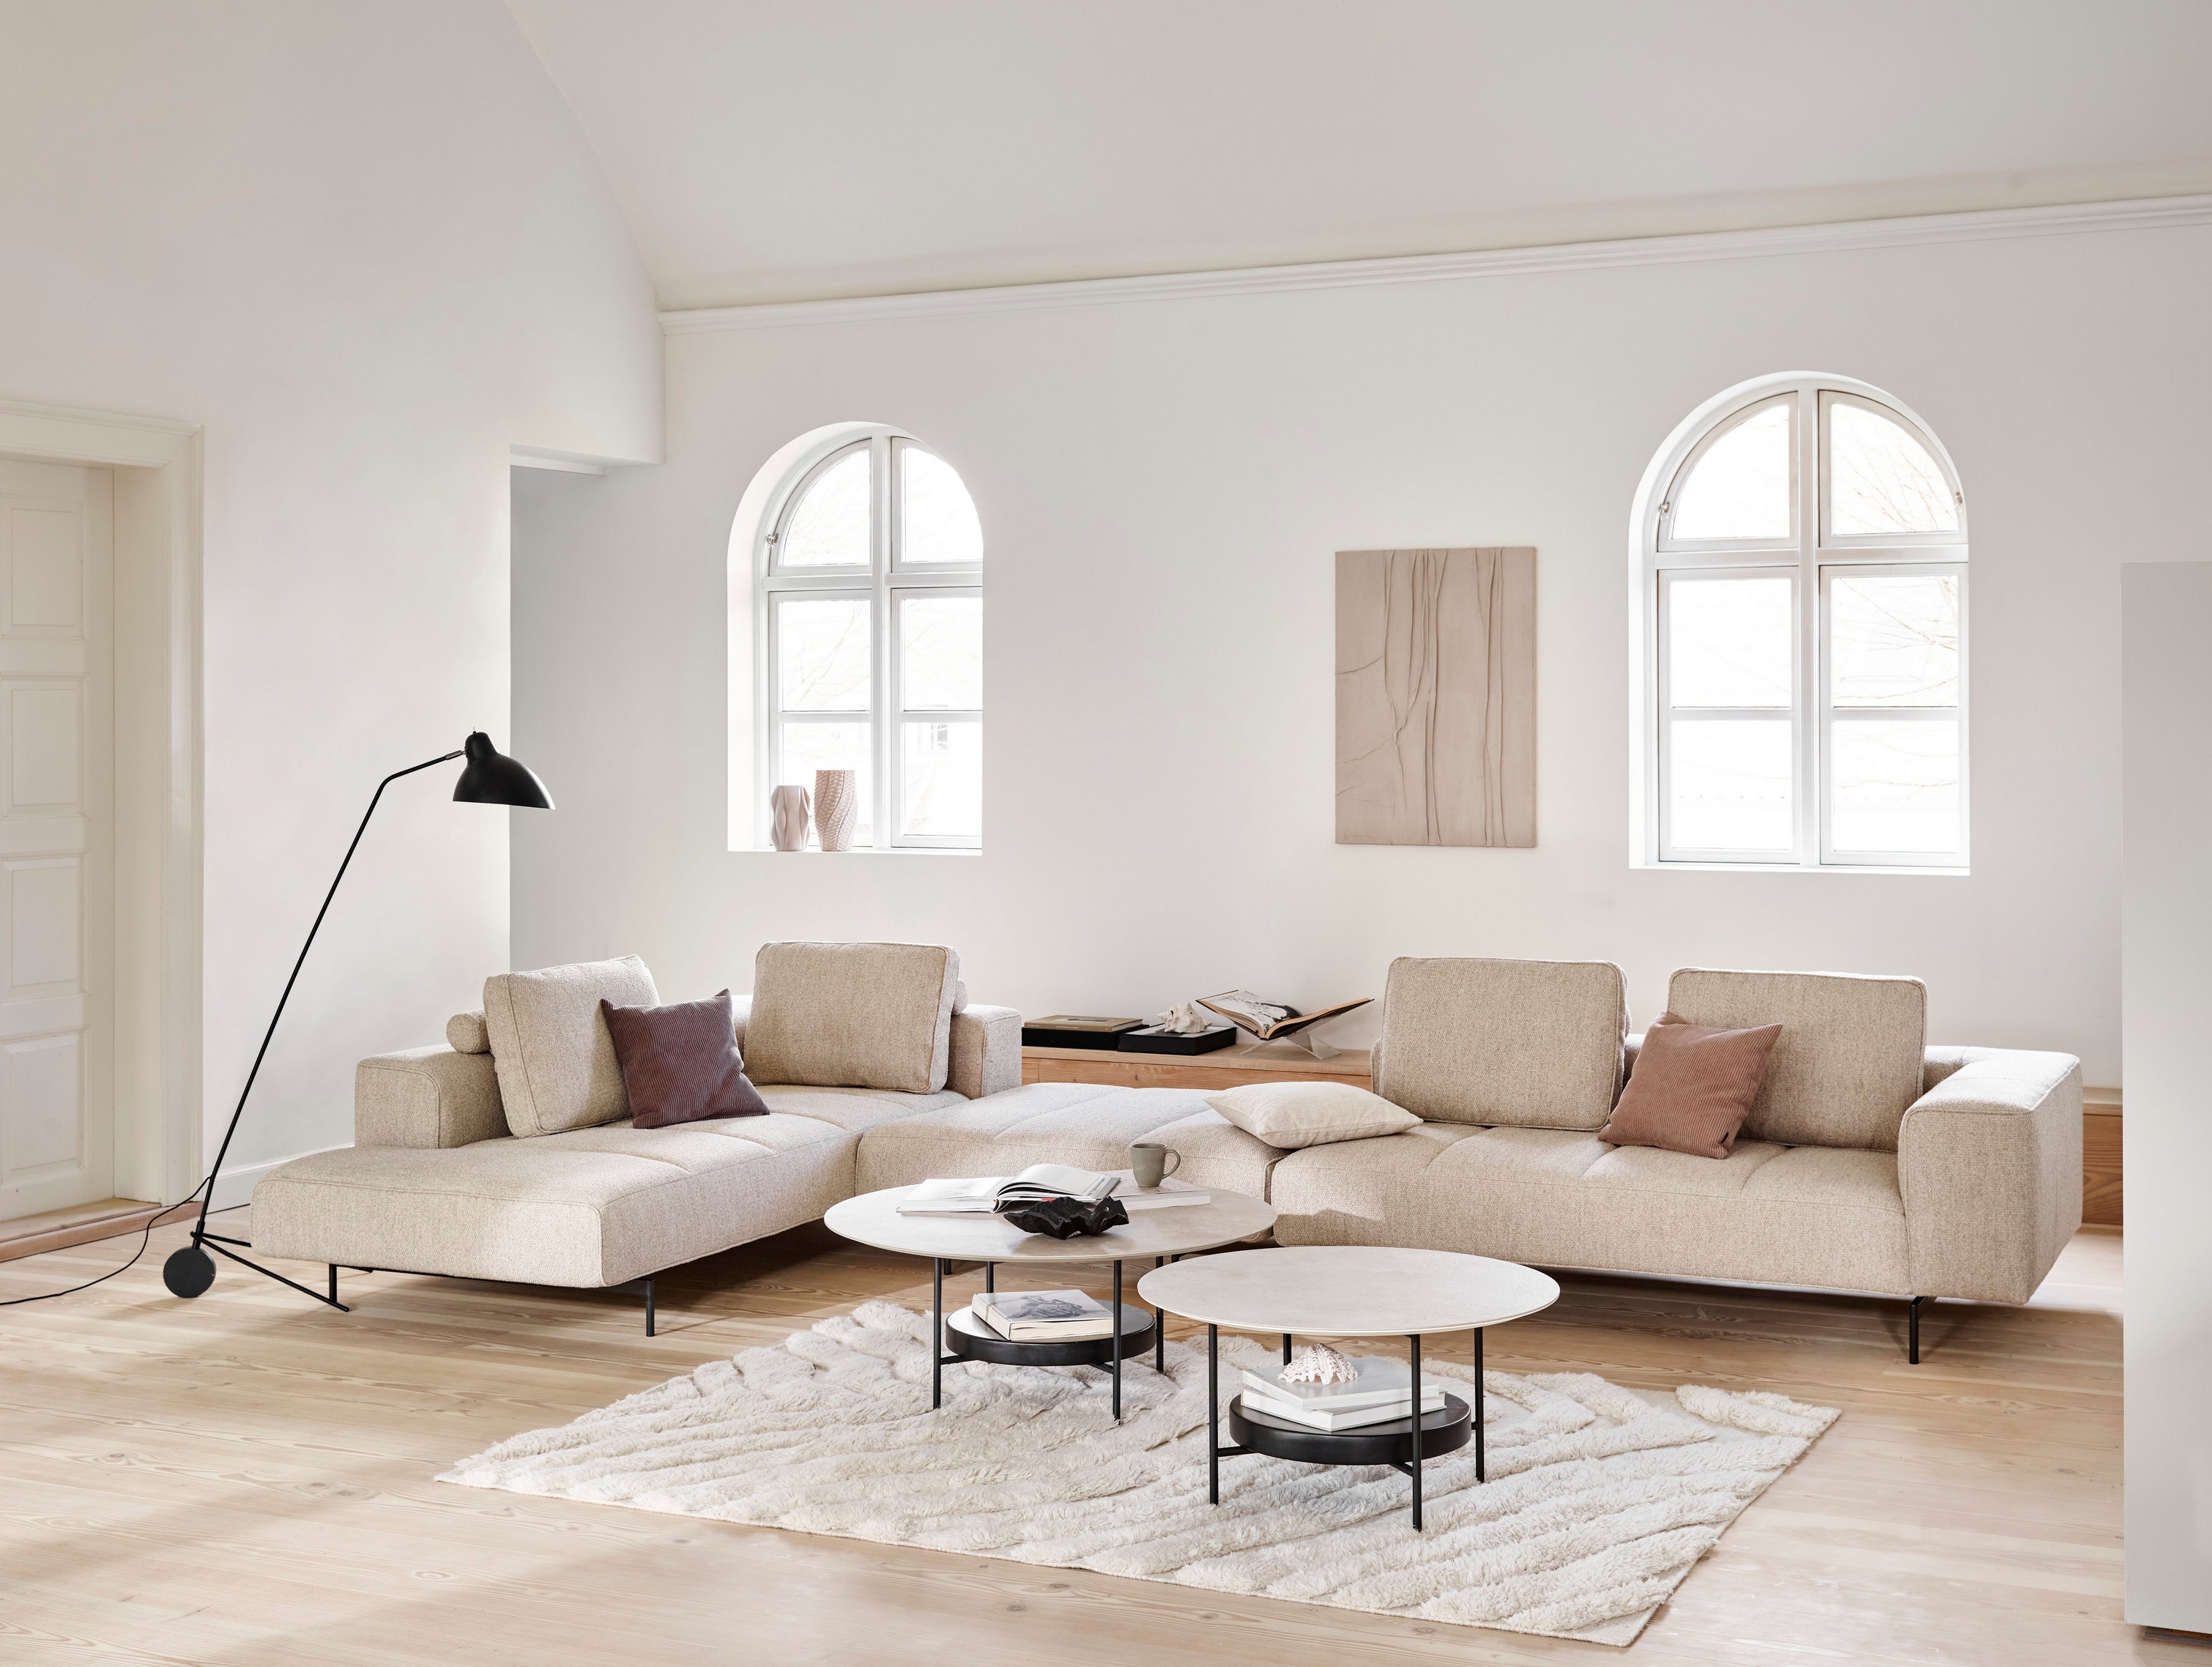 Sala de estar minimalista com sofá modular Amsterdam, mesas de centro Madrid, candeeiro de chão e janelas arqueadas.